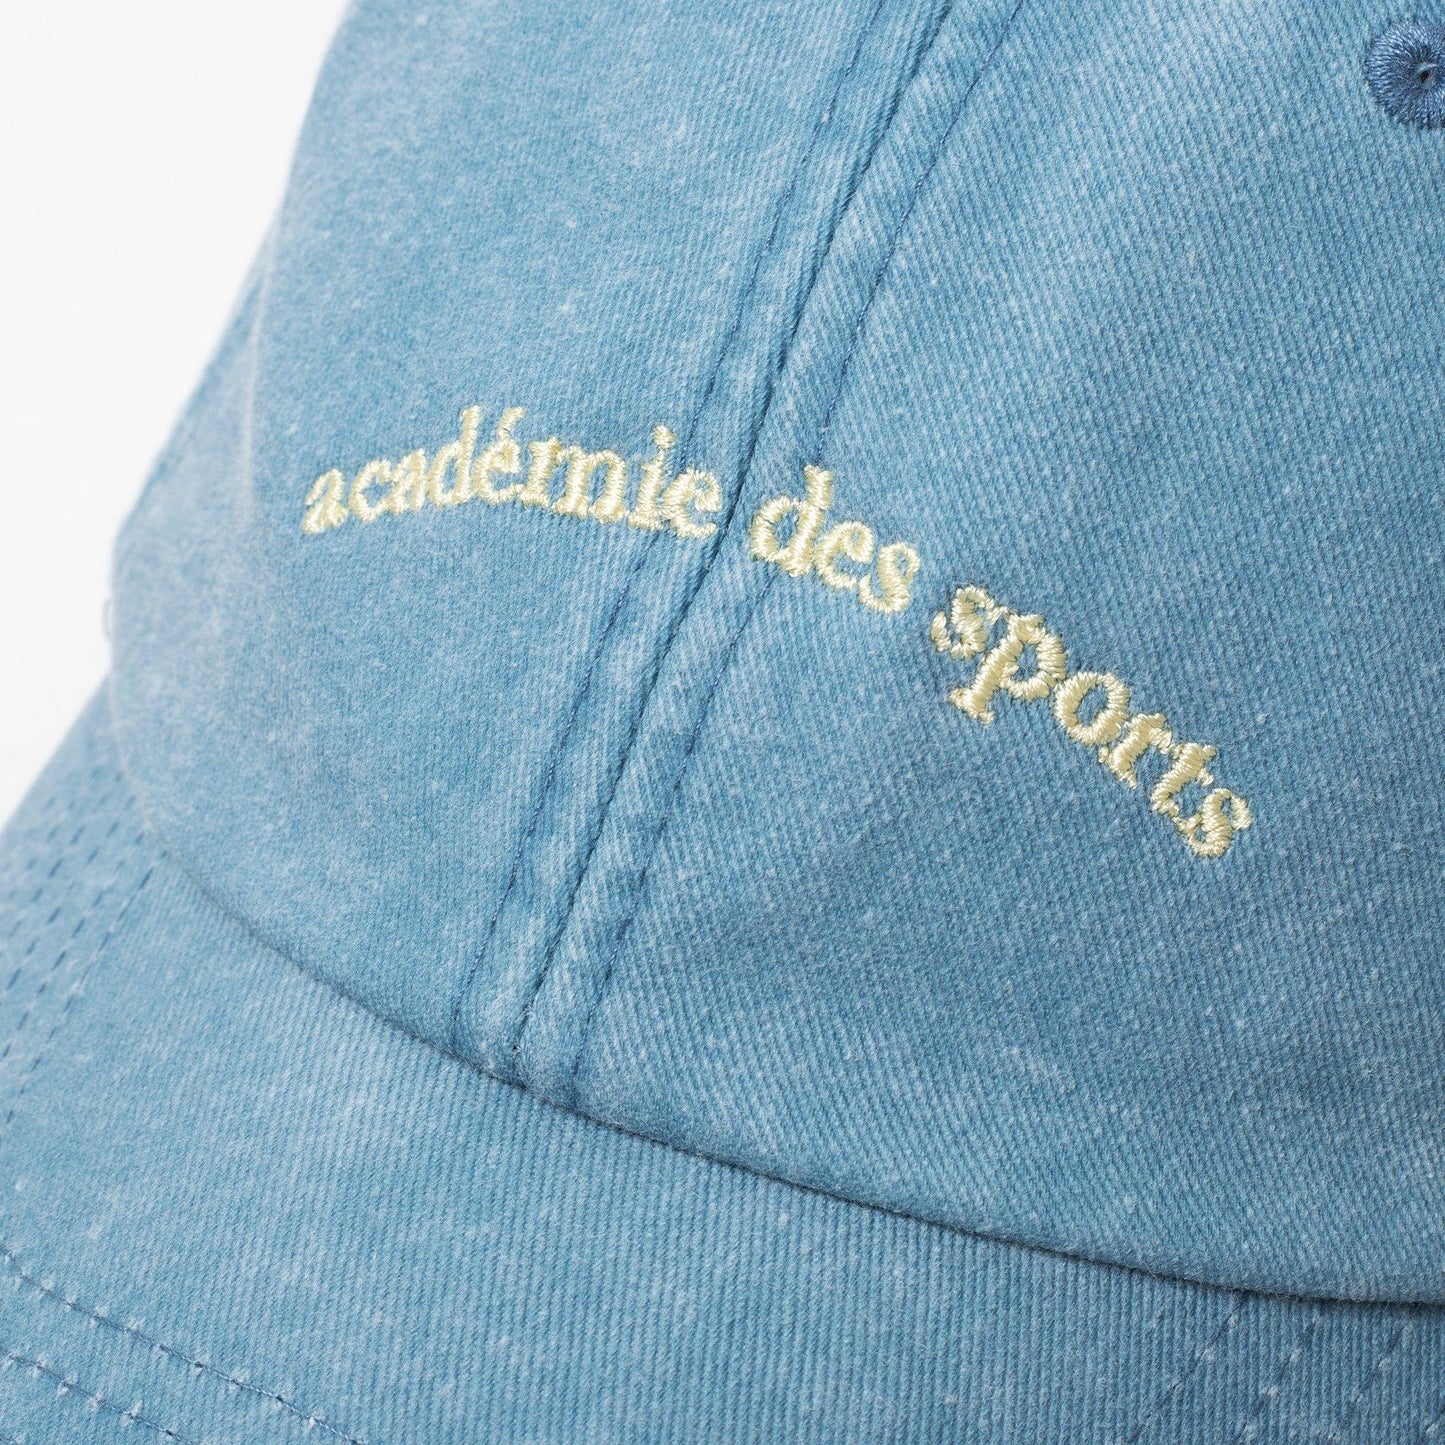 Vice 84 'Académie des Sports' Washed Cap - 2 Colours - UN:IK Clothing